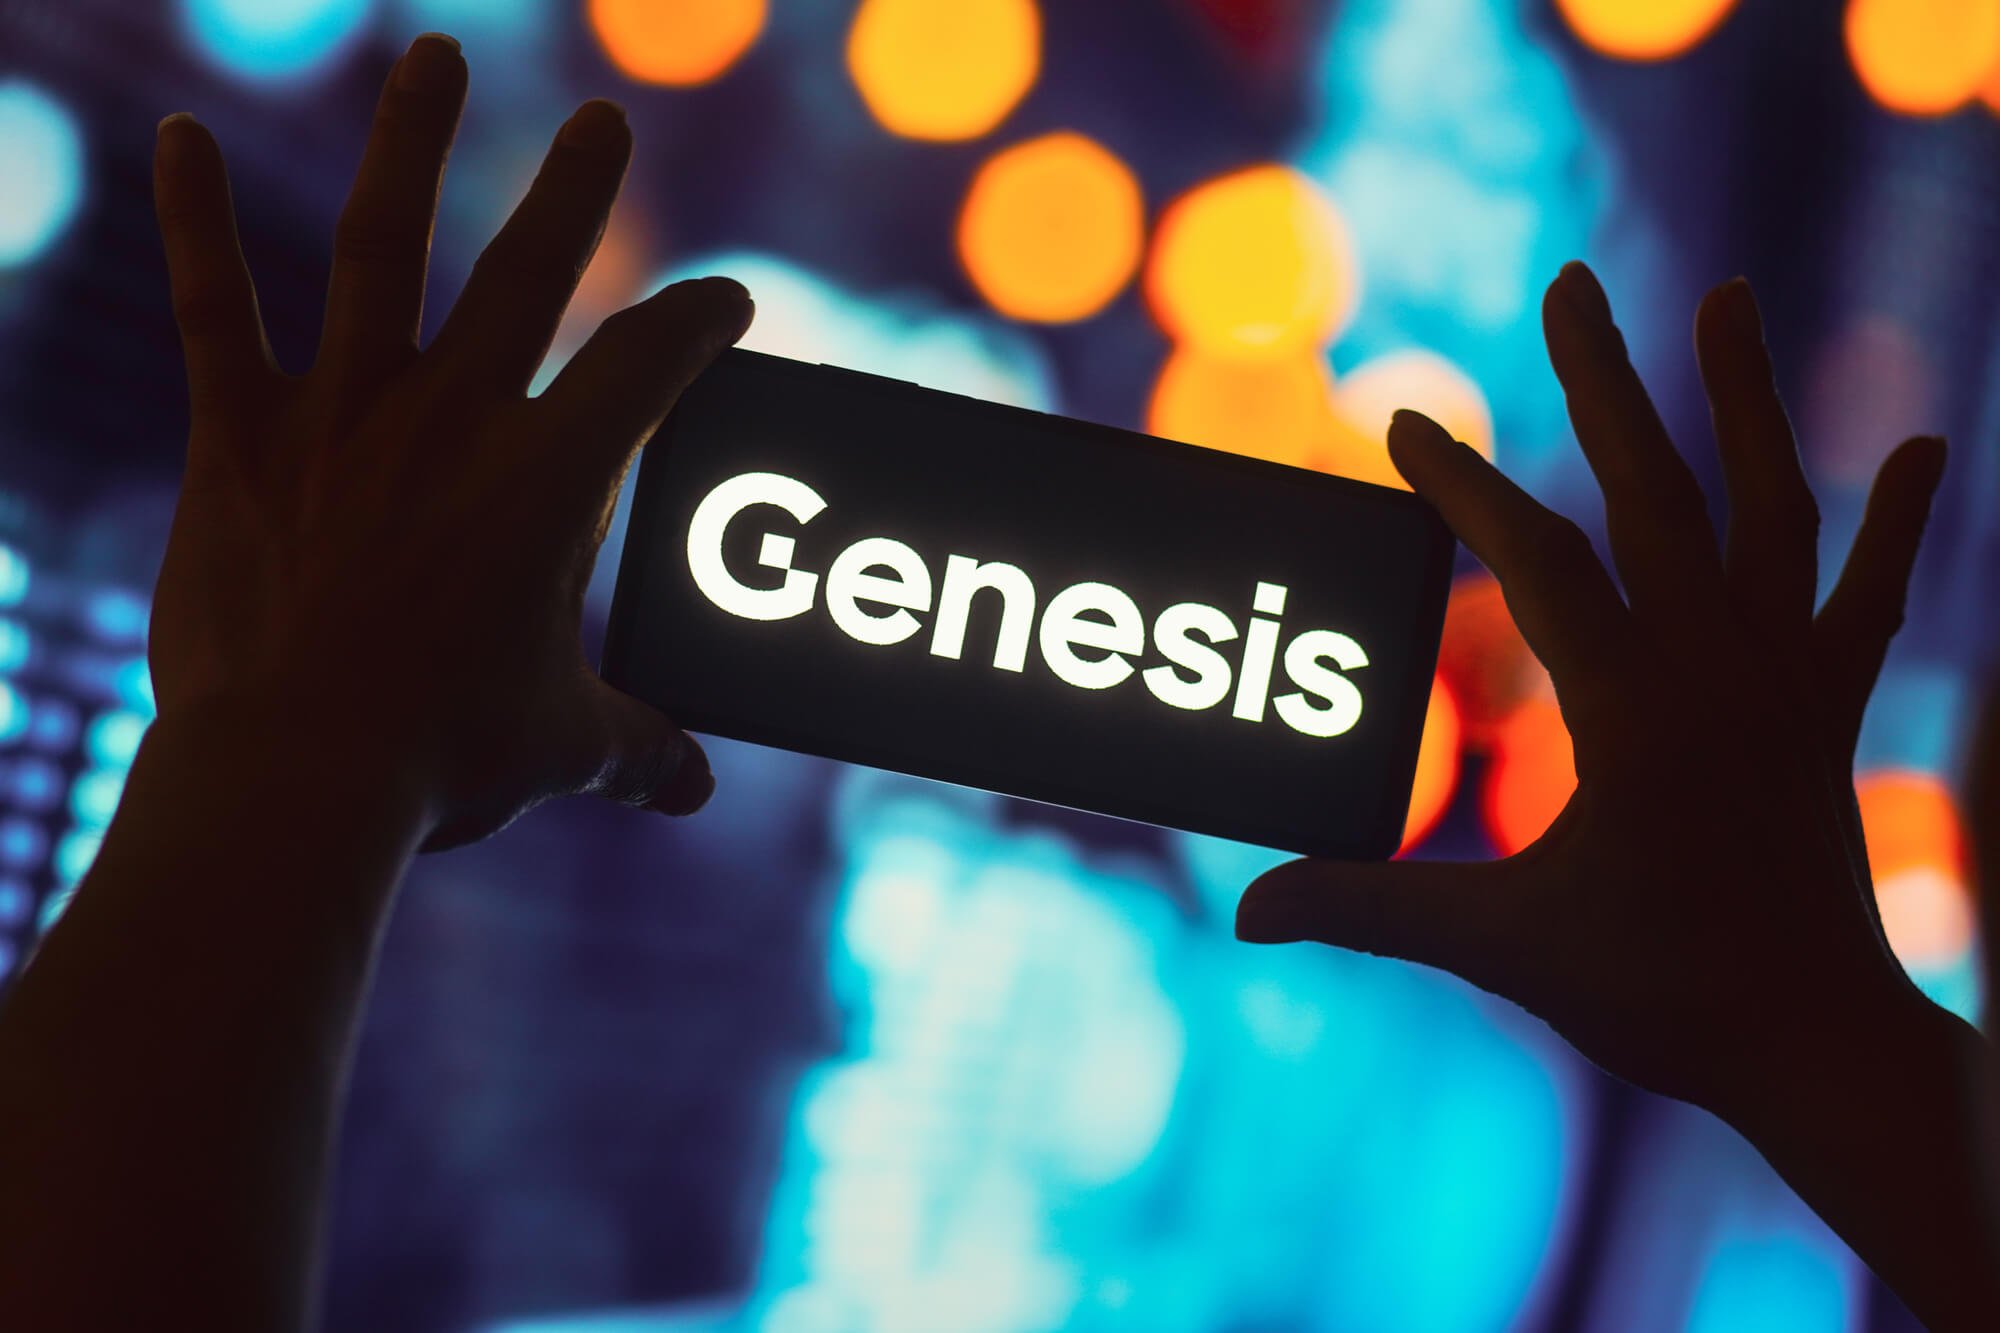 Ulaş Utku Bozdoğan: Genesis Alacaklıları Arabulucuya Gidecek 1